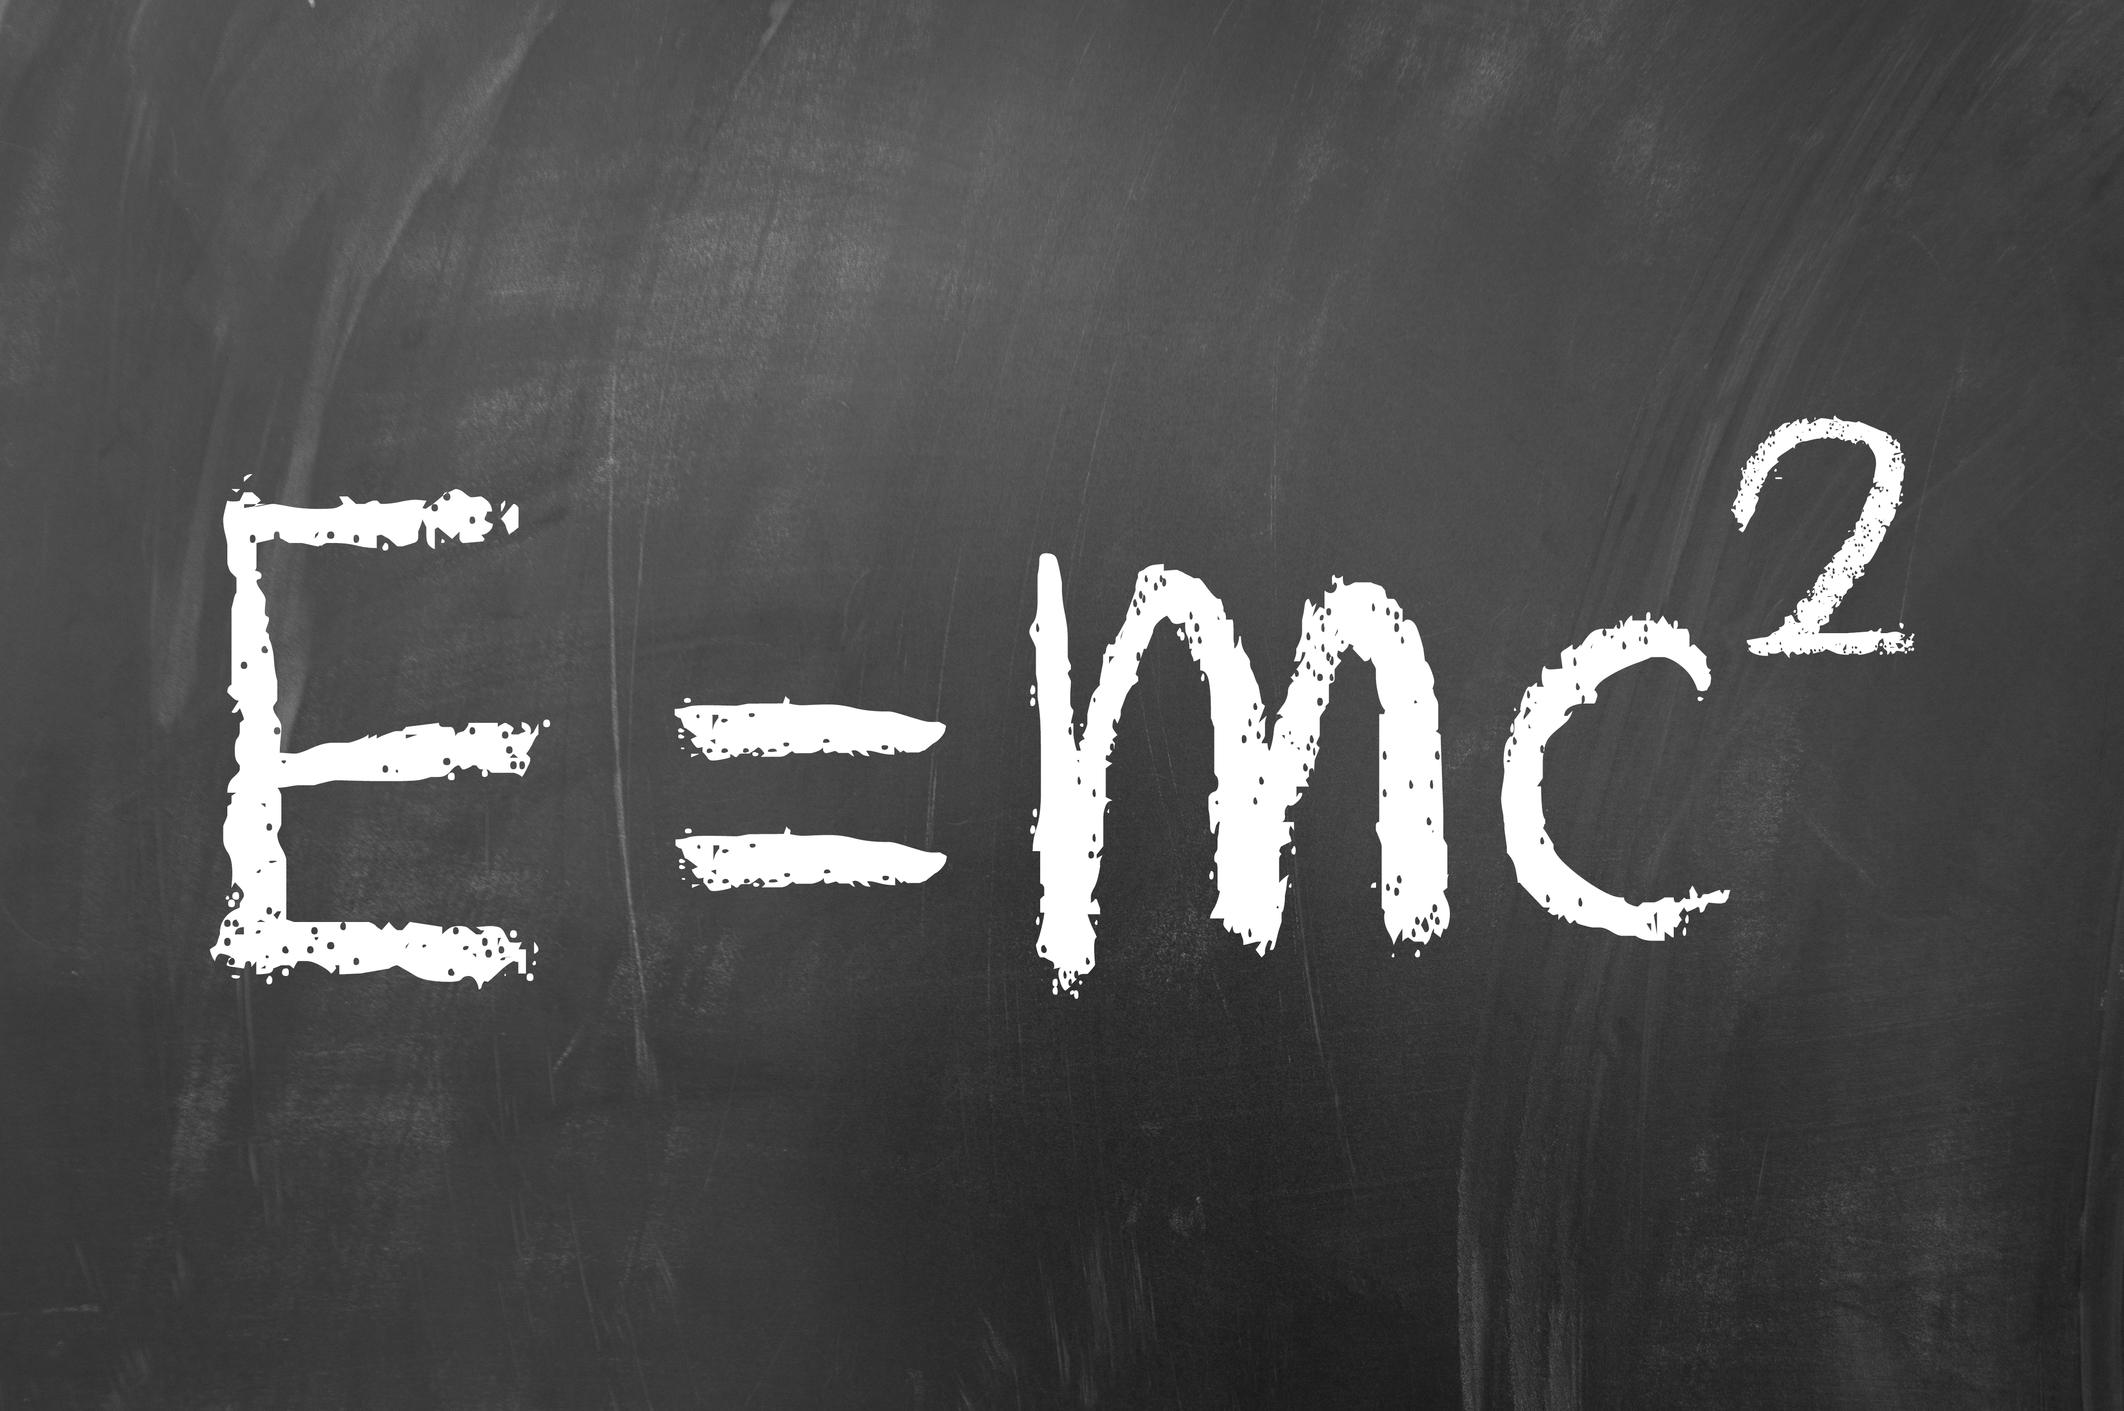 Е равно мс. Е mc2. Эйнштейна е мс2. Е равно МЦ квадрат. Формула Эйнштейна e mc2.